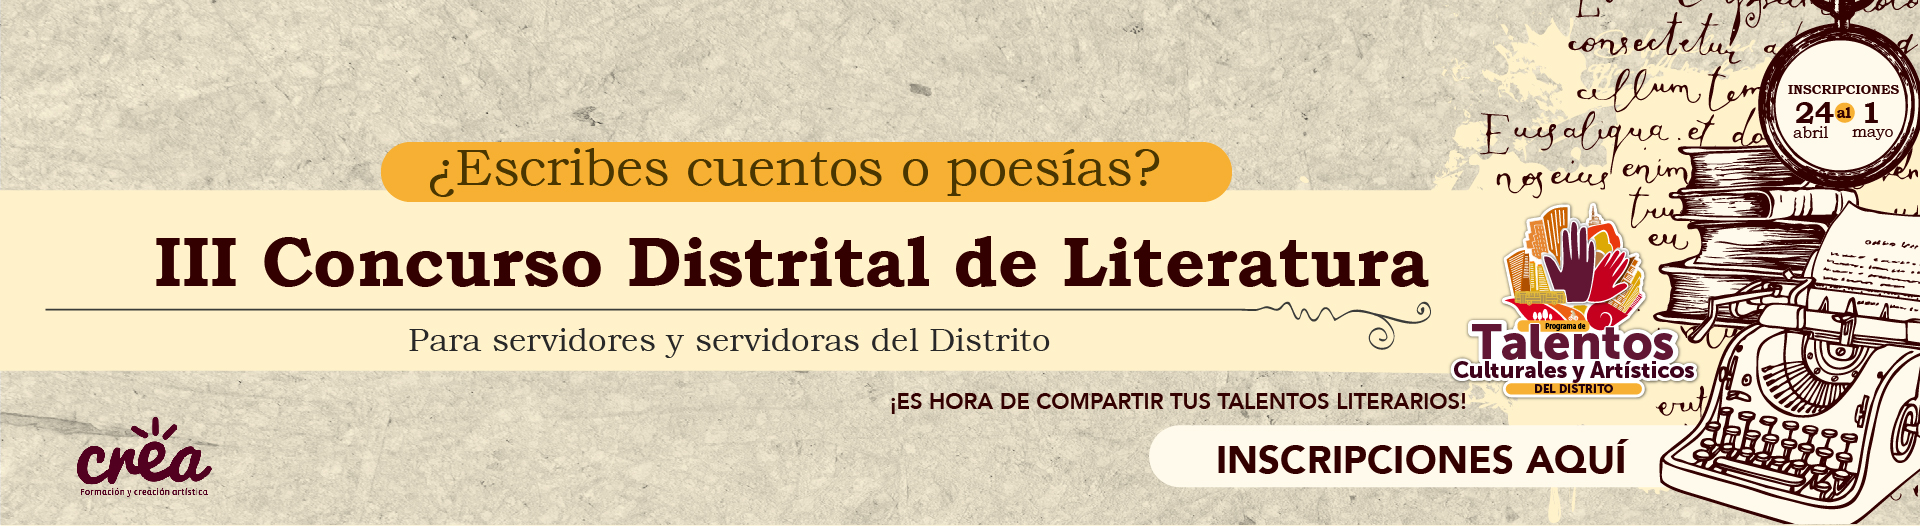 https://www.serviciocivil.gov.co/iii-concurso-distrital-literatura